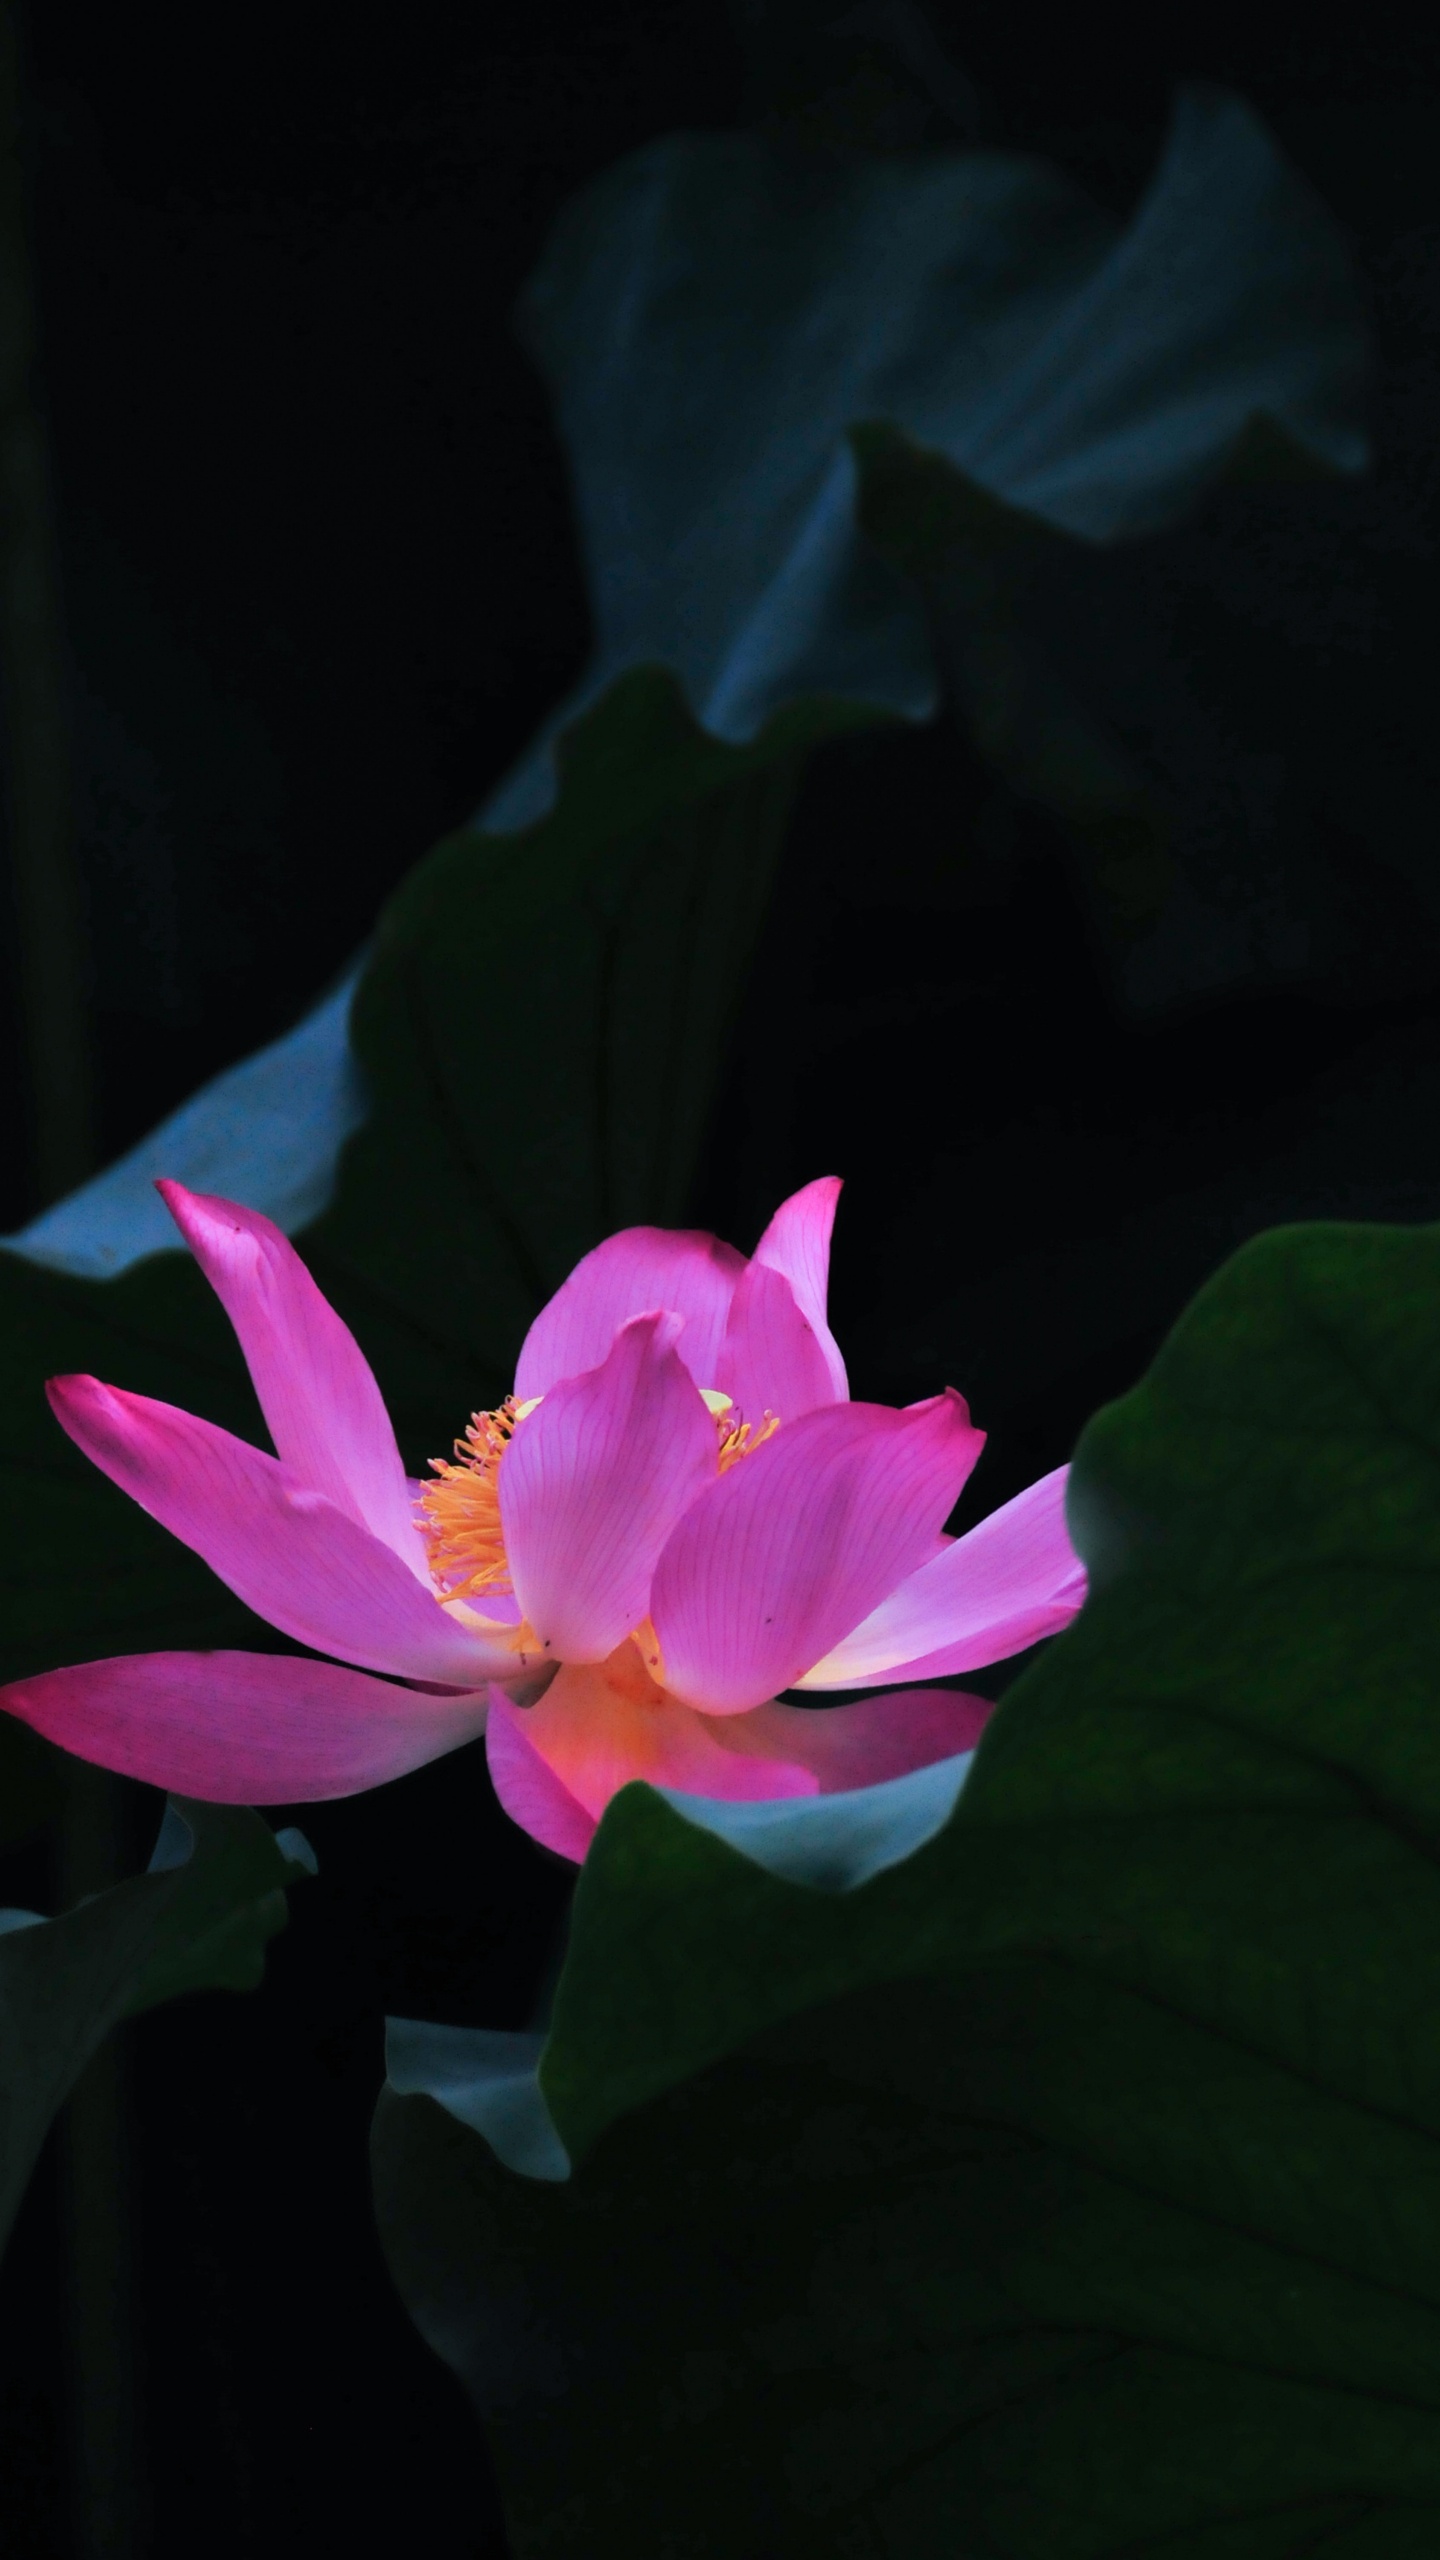 Pink Lotus Flower in Bloom. Wallpaper in 1440x2560 Resolution